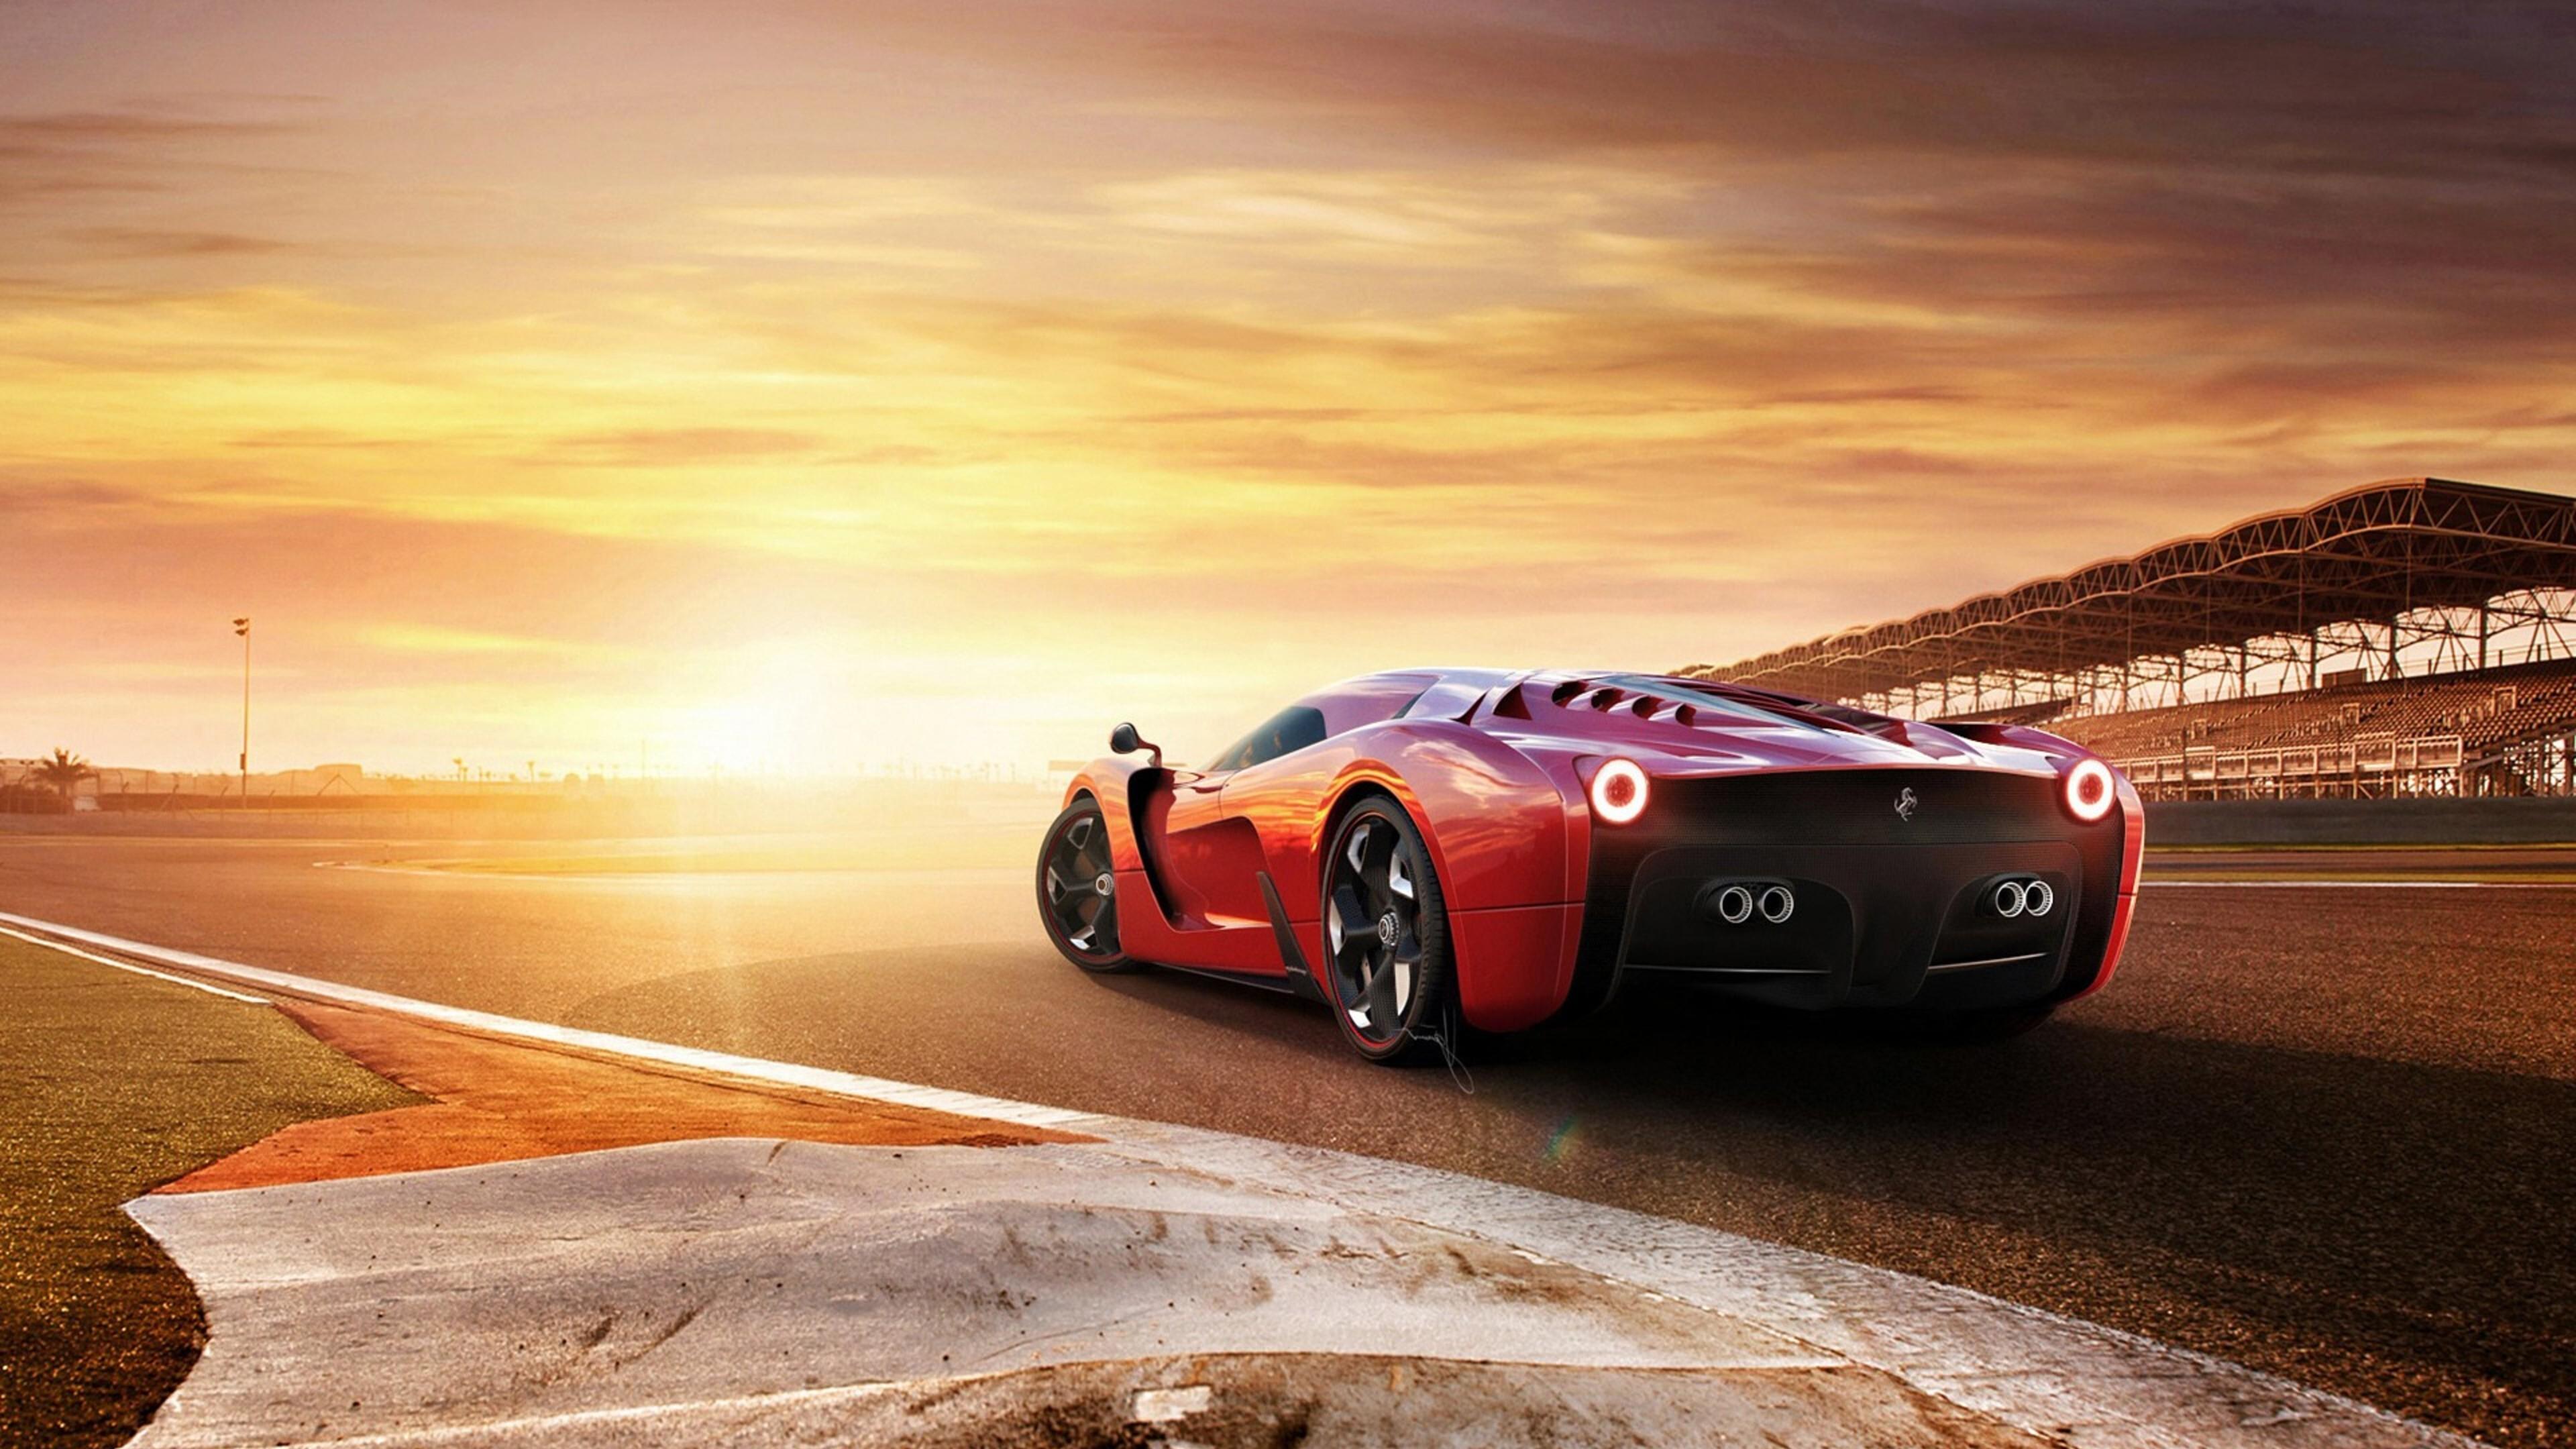 3840 x 2160 · jpeg - 3840x2160 Ferrari 458 Concept Car 4k HD 4k Wallpapers, Images ...